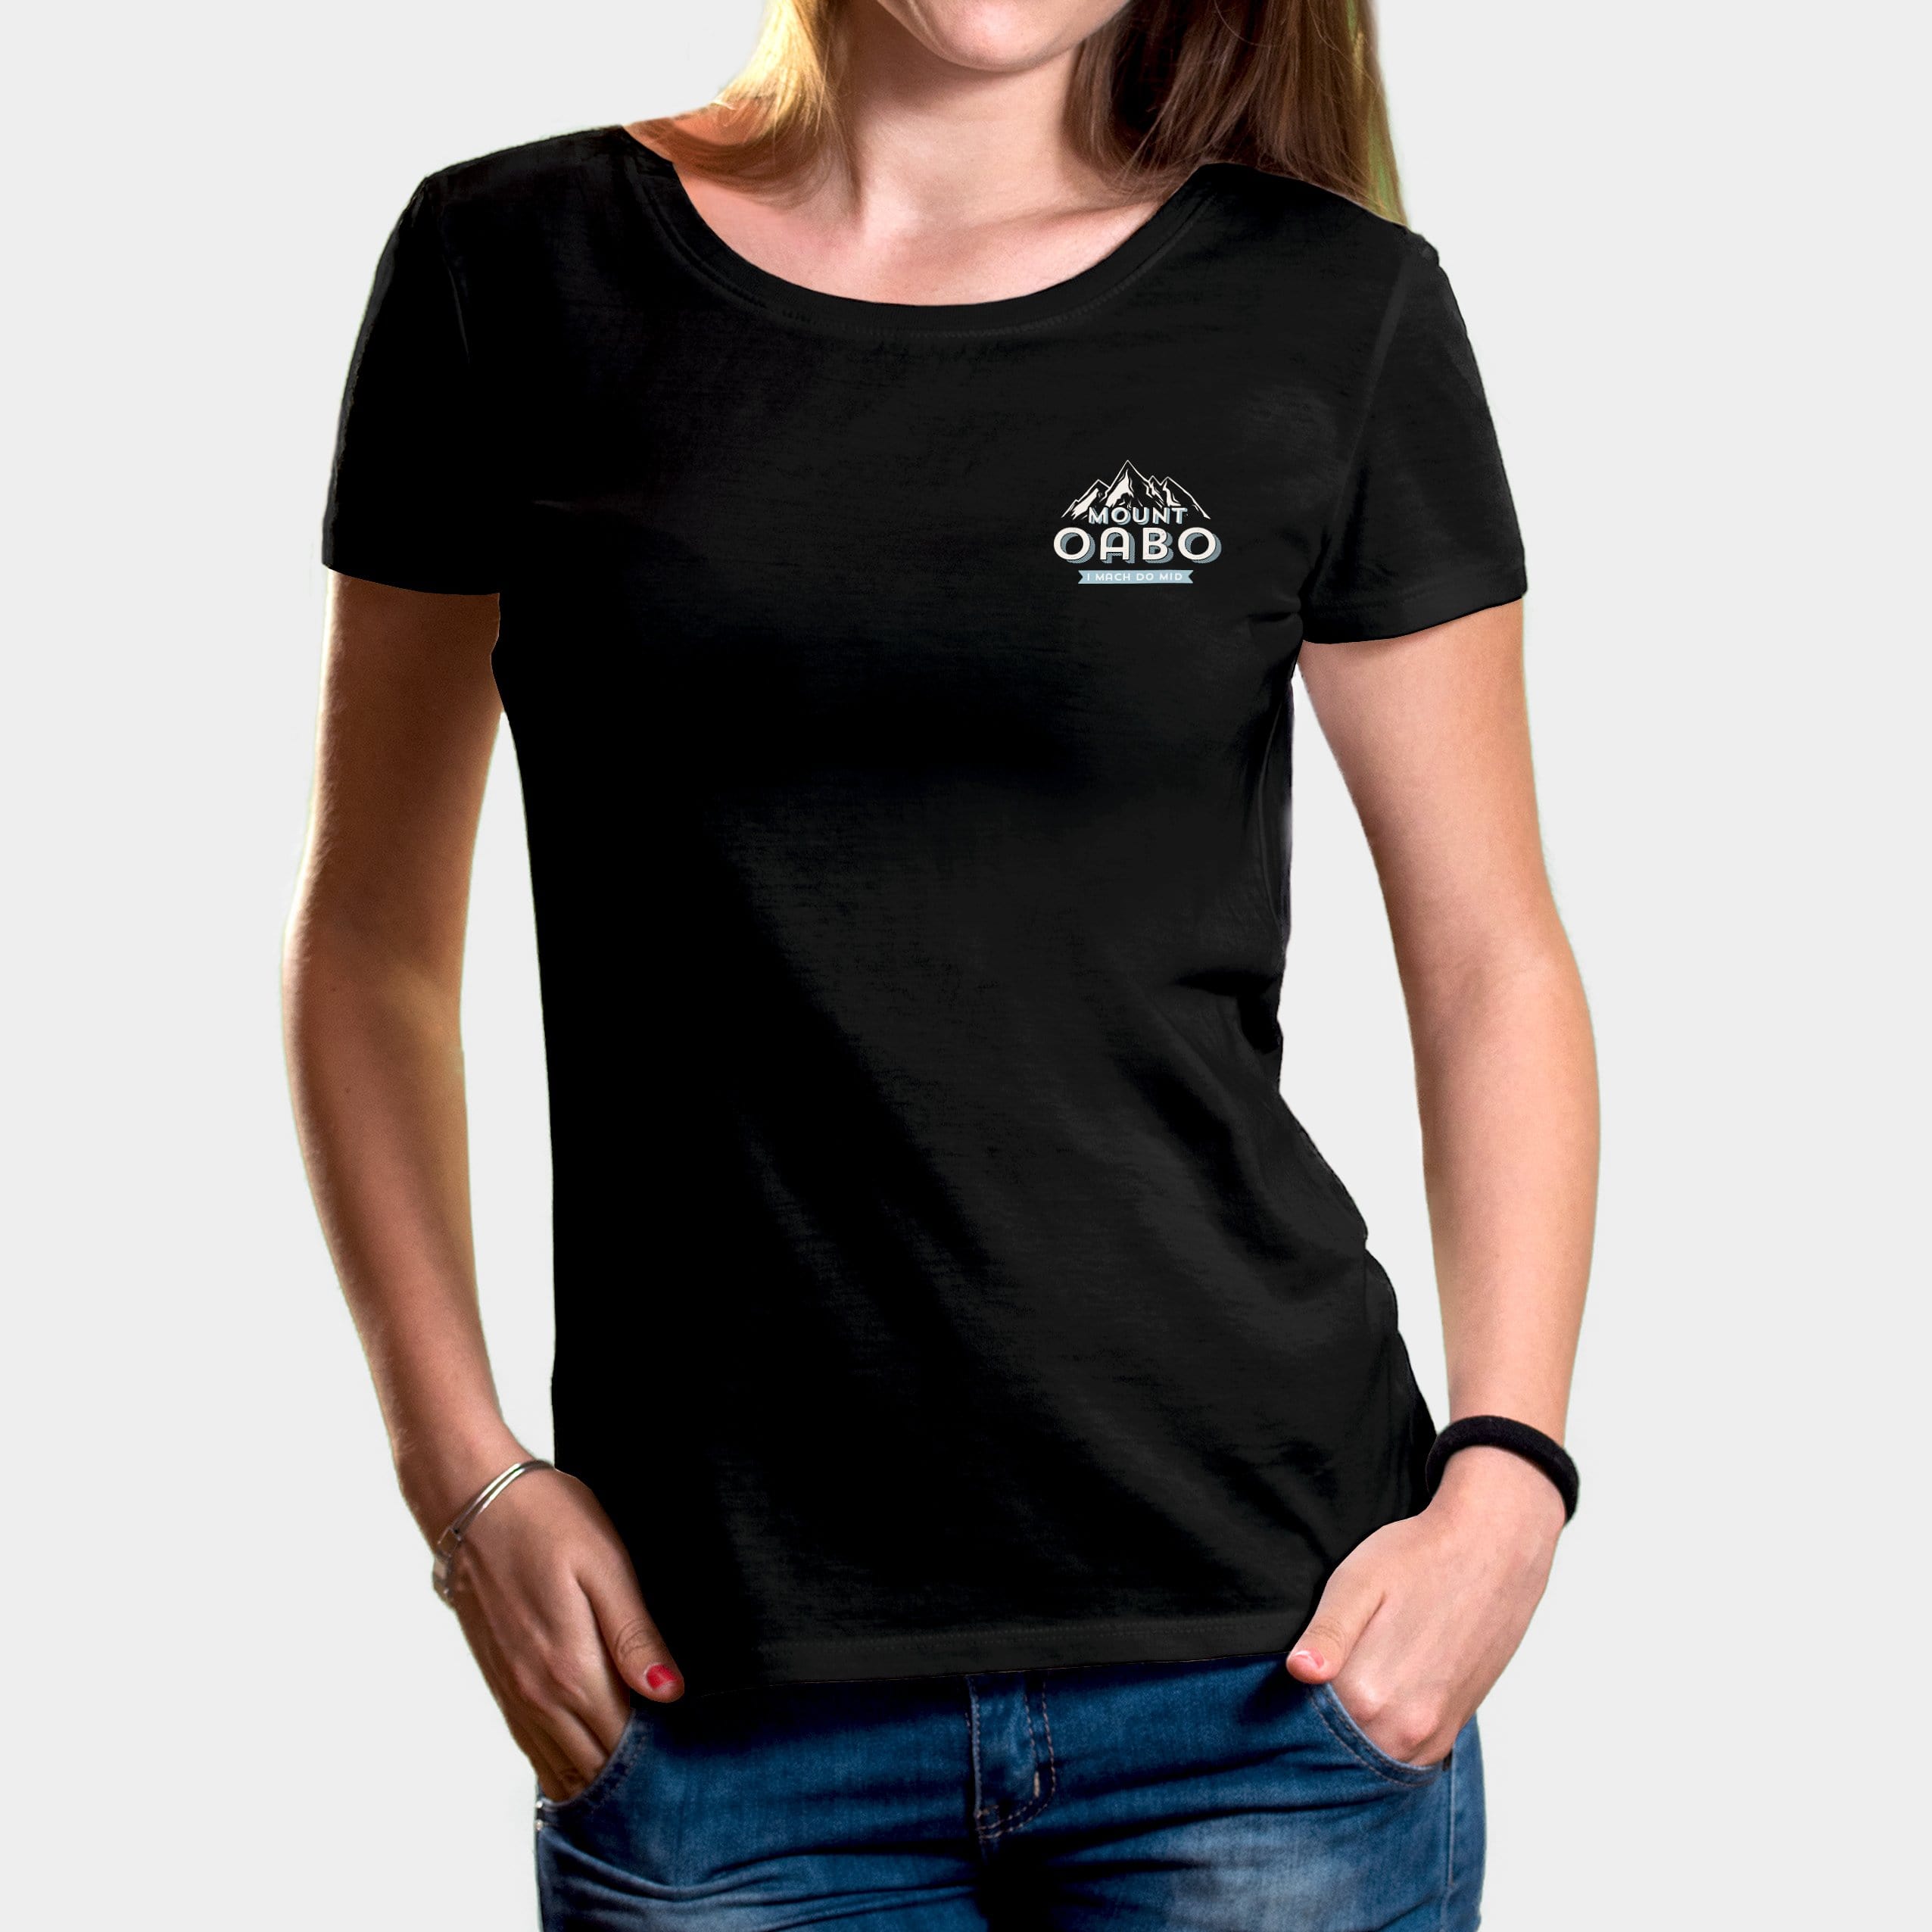 Projekt Damen-T-Shirt "Mount Oabo" XS / schwarz - aus nachhaltiger und fairer Produktion